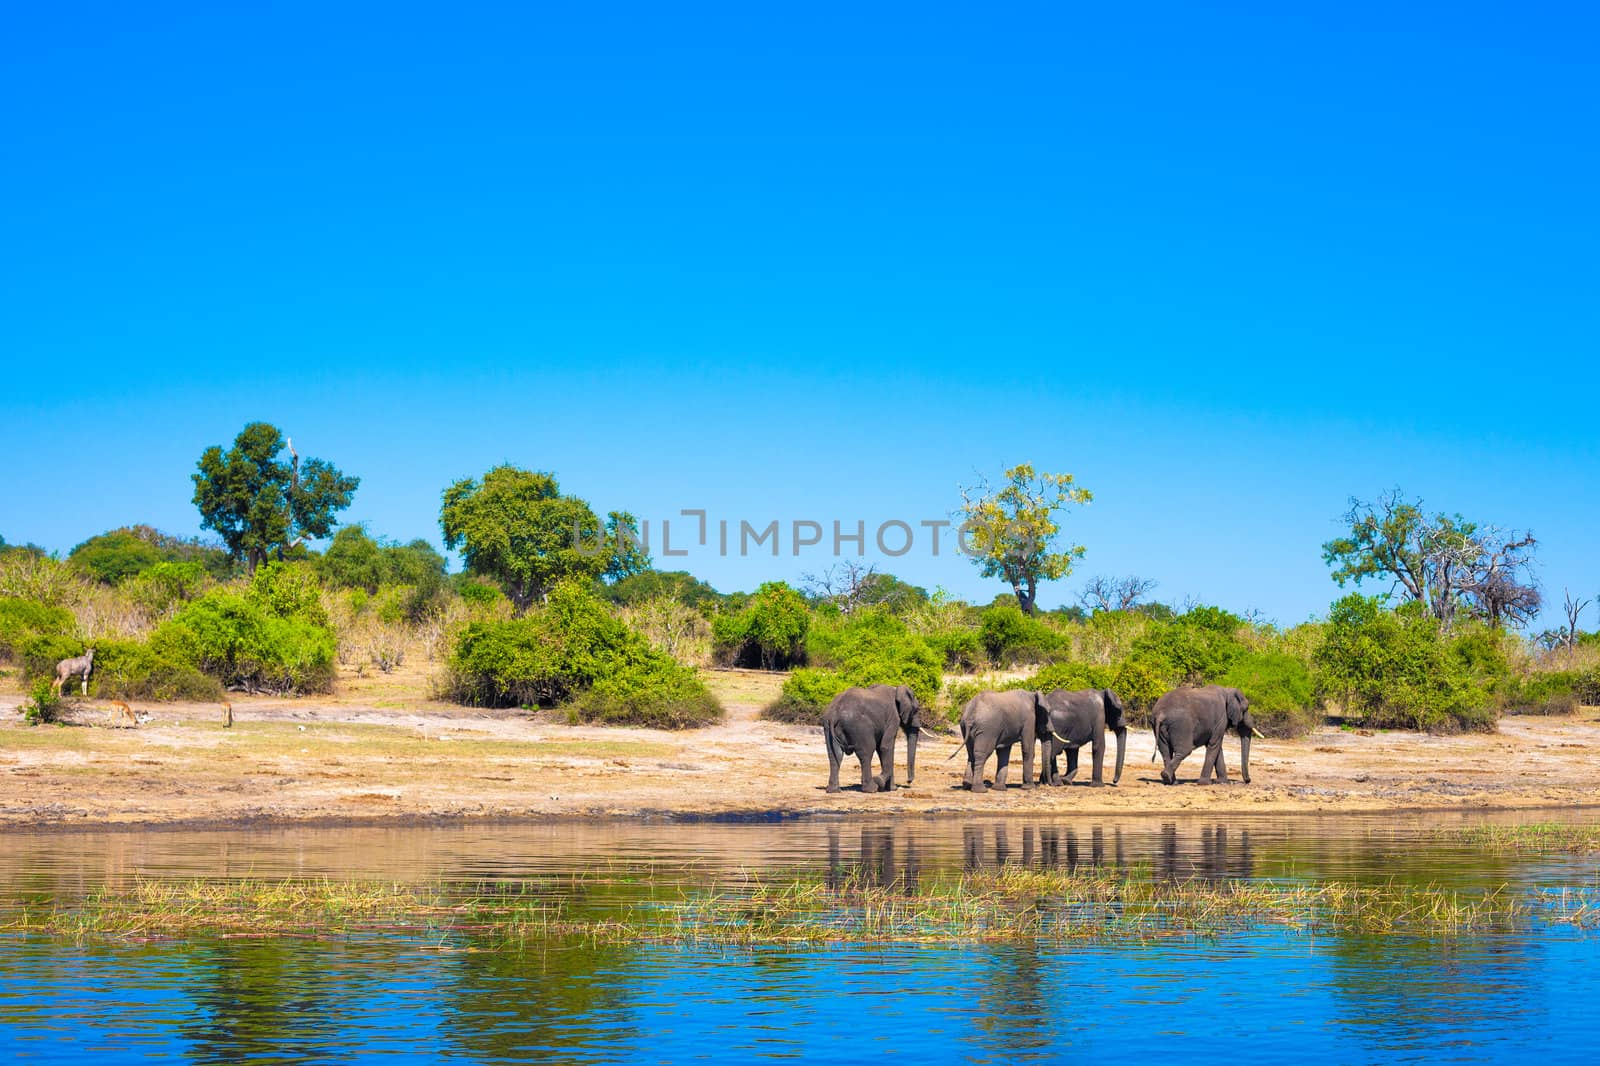 Group of elephants walking along a river